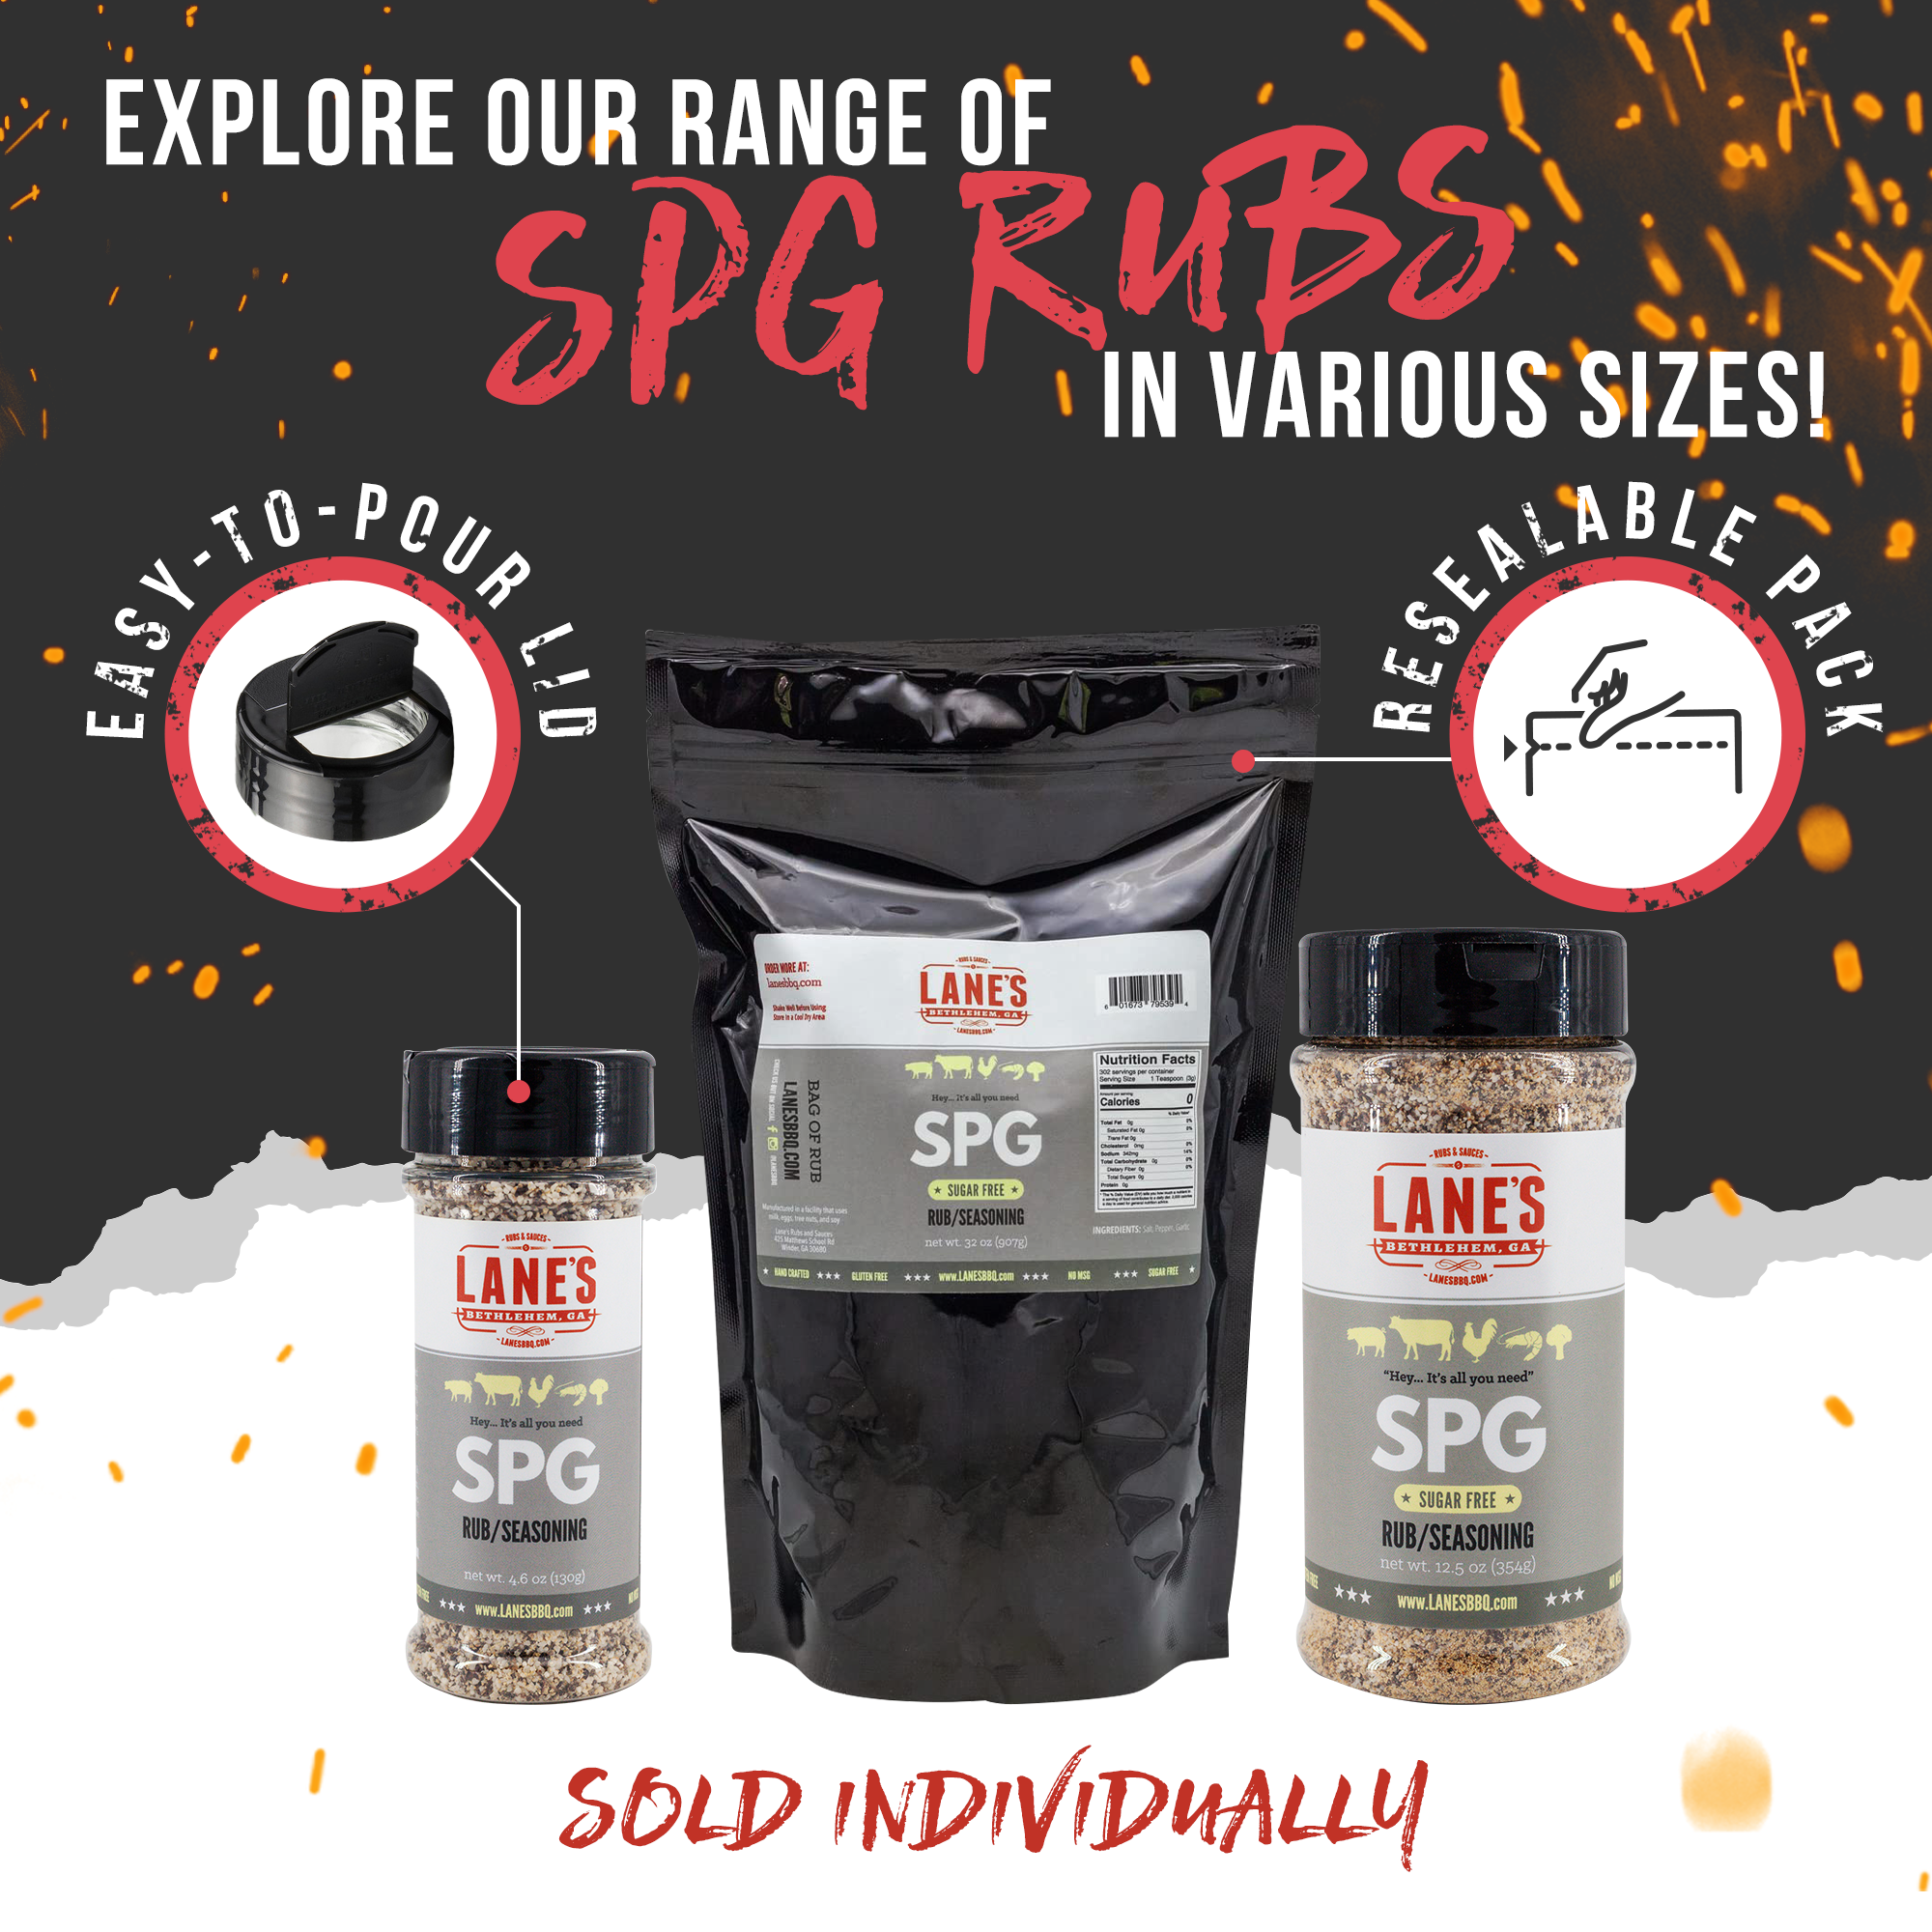 Lane's SPG Seasoning Sizes